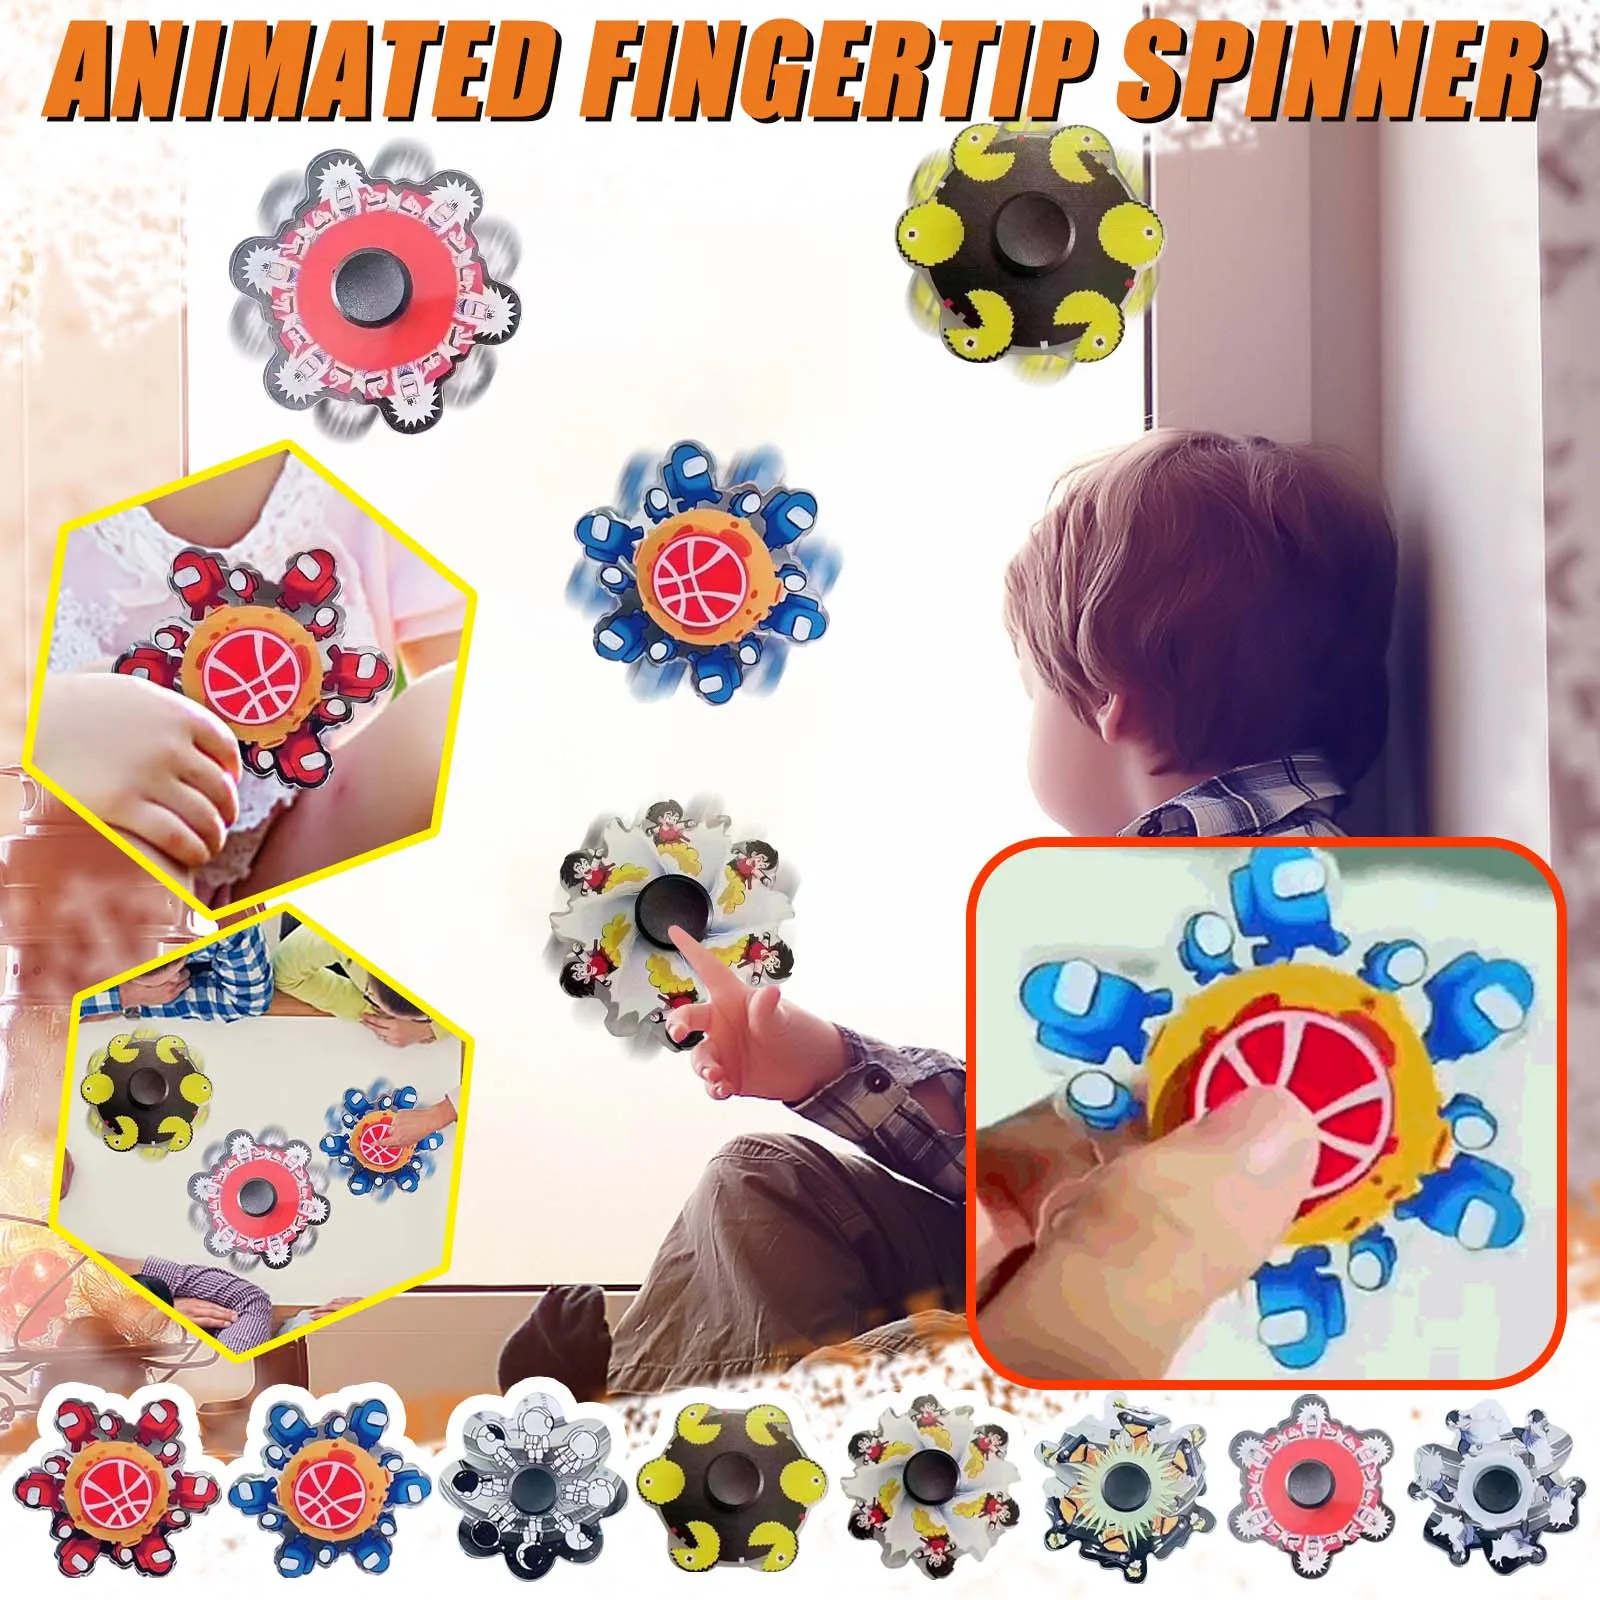 

3D игрушки Fidget анимации палец Спиннер-гироскоп Спиннер пластиковый работает в мультяшном стиле, игрушки для детей антистресс для рук